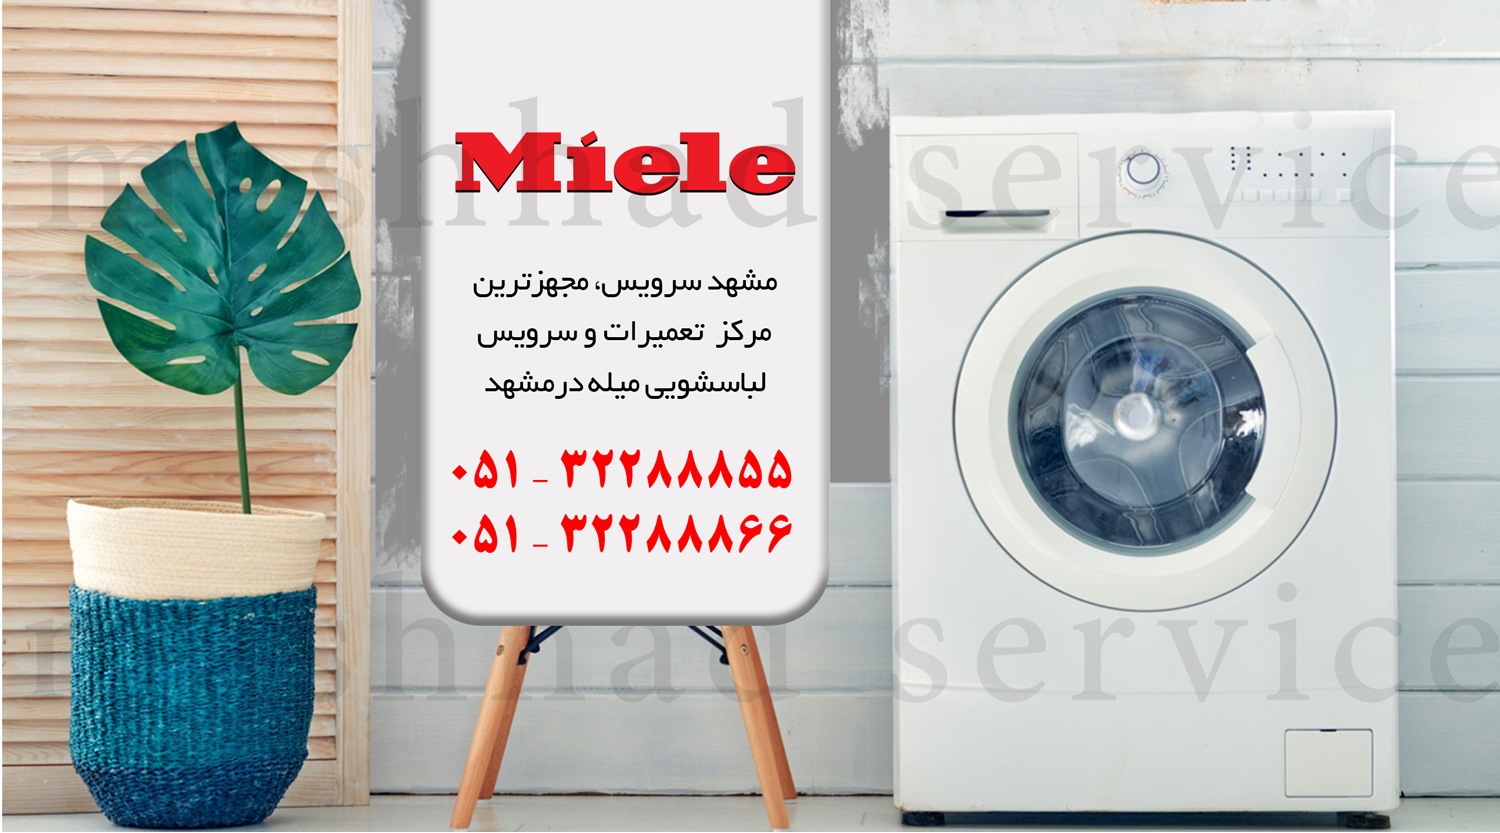 تعمیر ماشین لباسشویی میله در مشهد